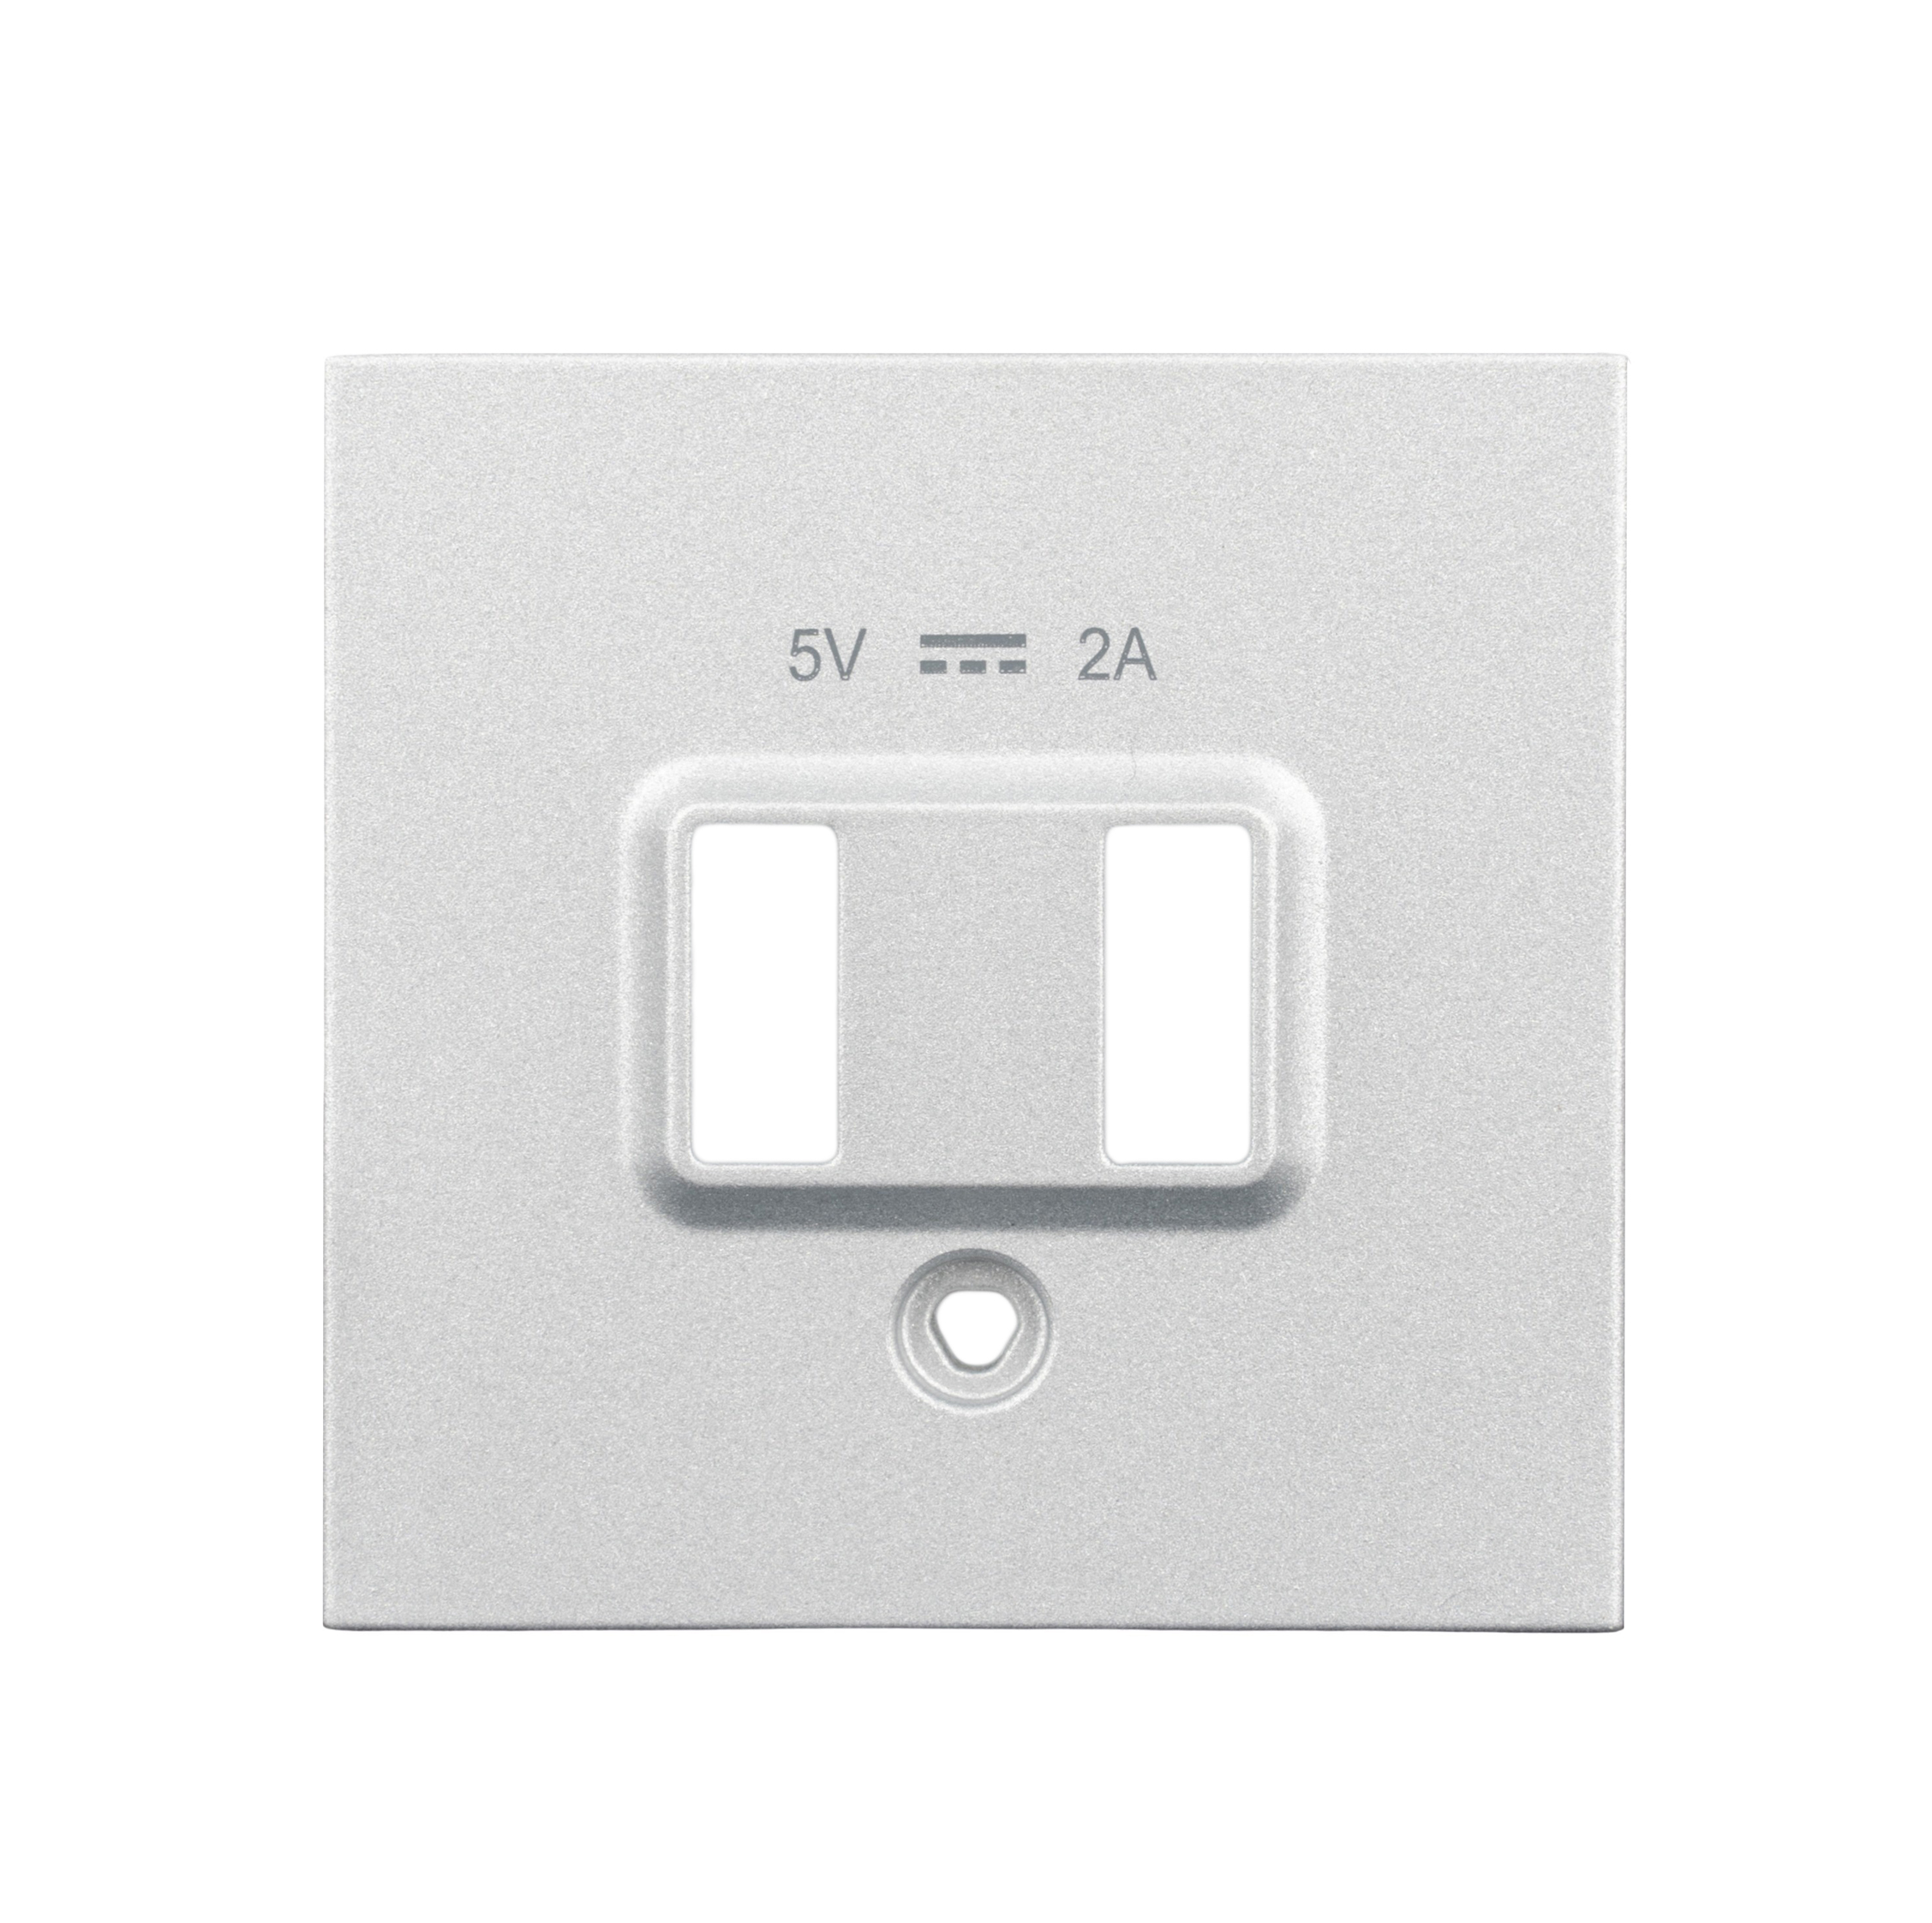 Foto: USB Ladesteckdosen-Abdeckung, weiß (c) Schrack